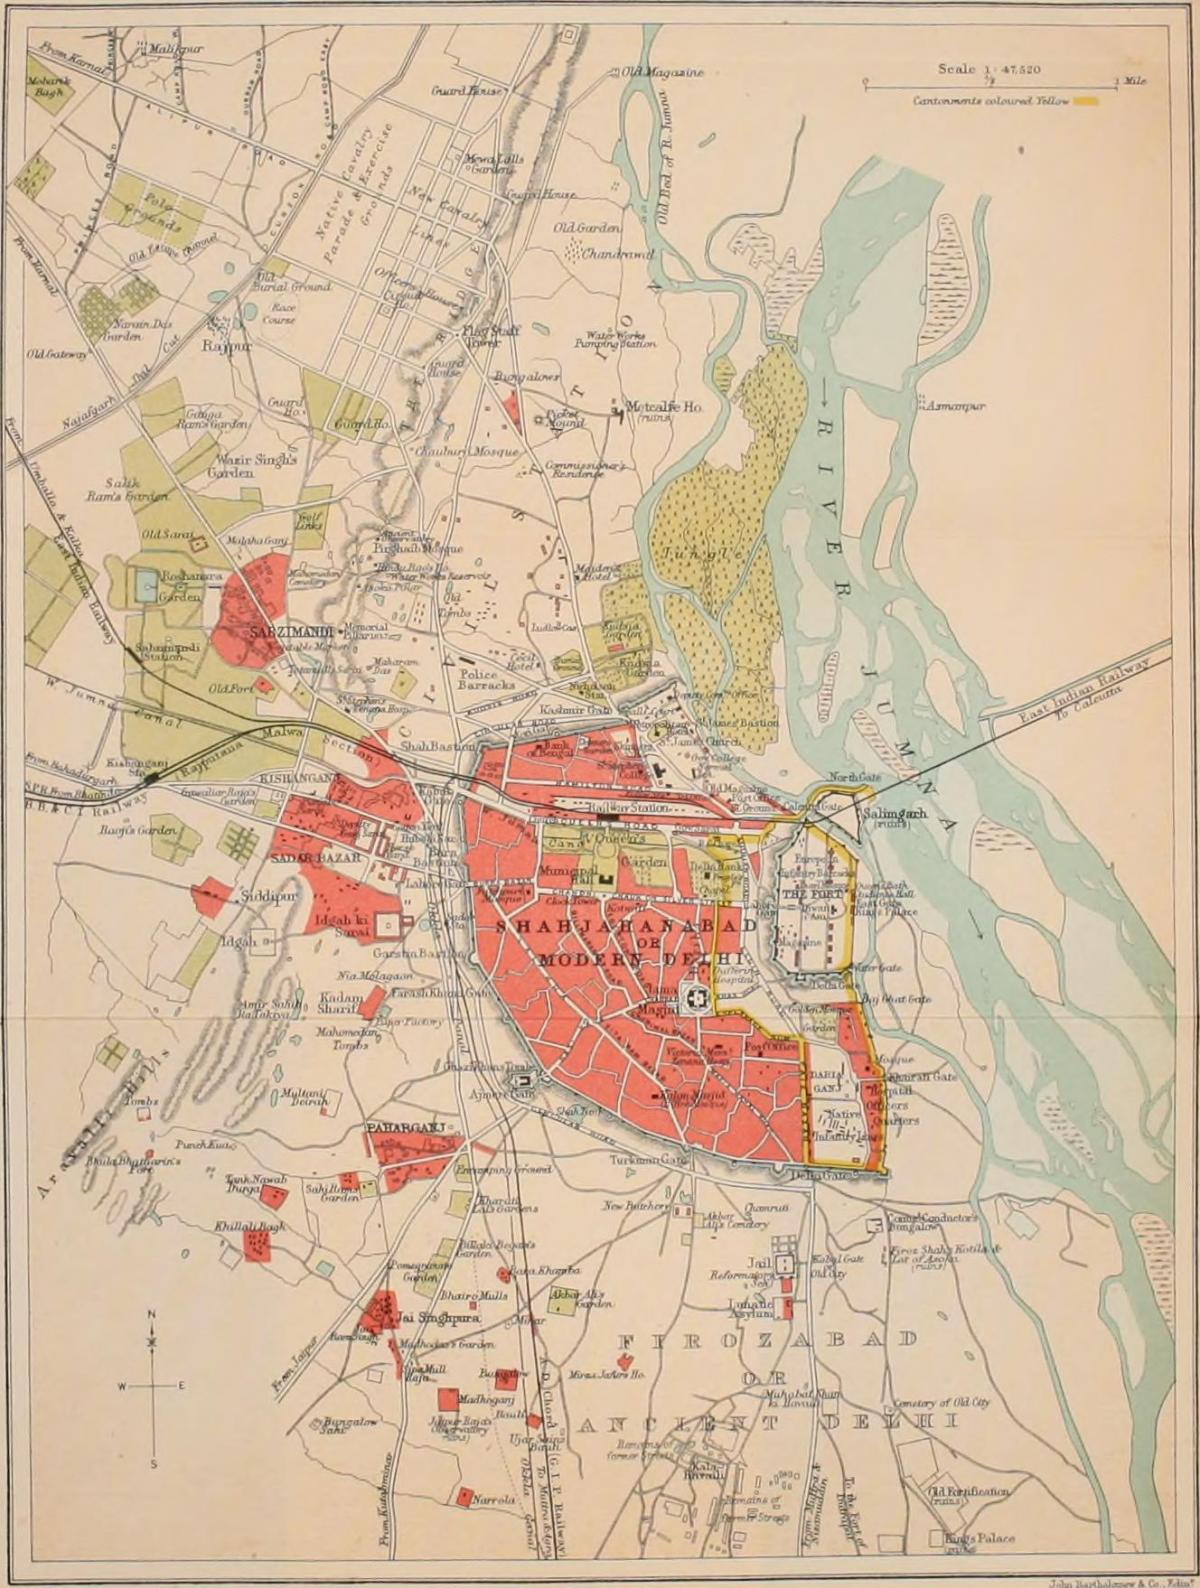 New Delhi historische kaart